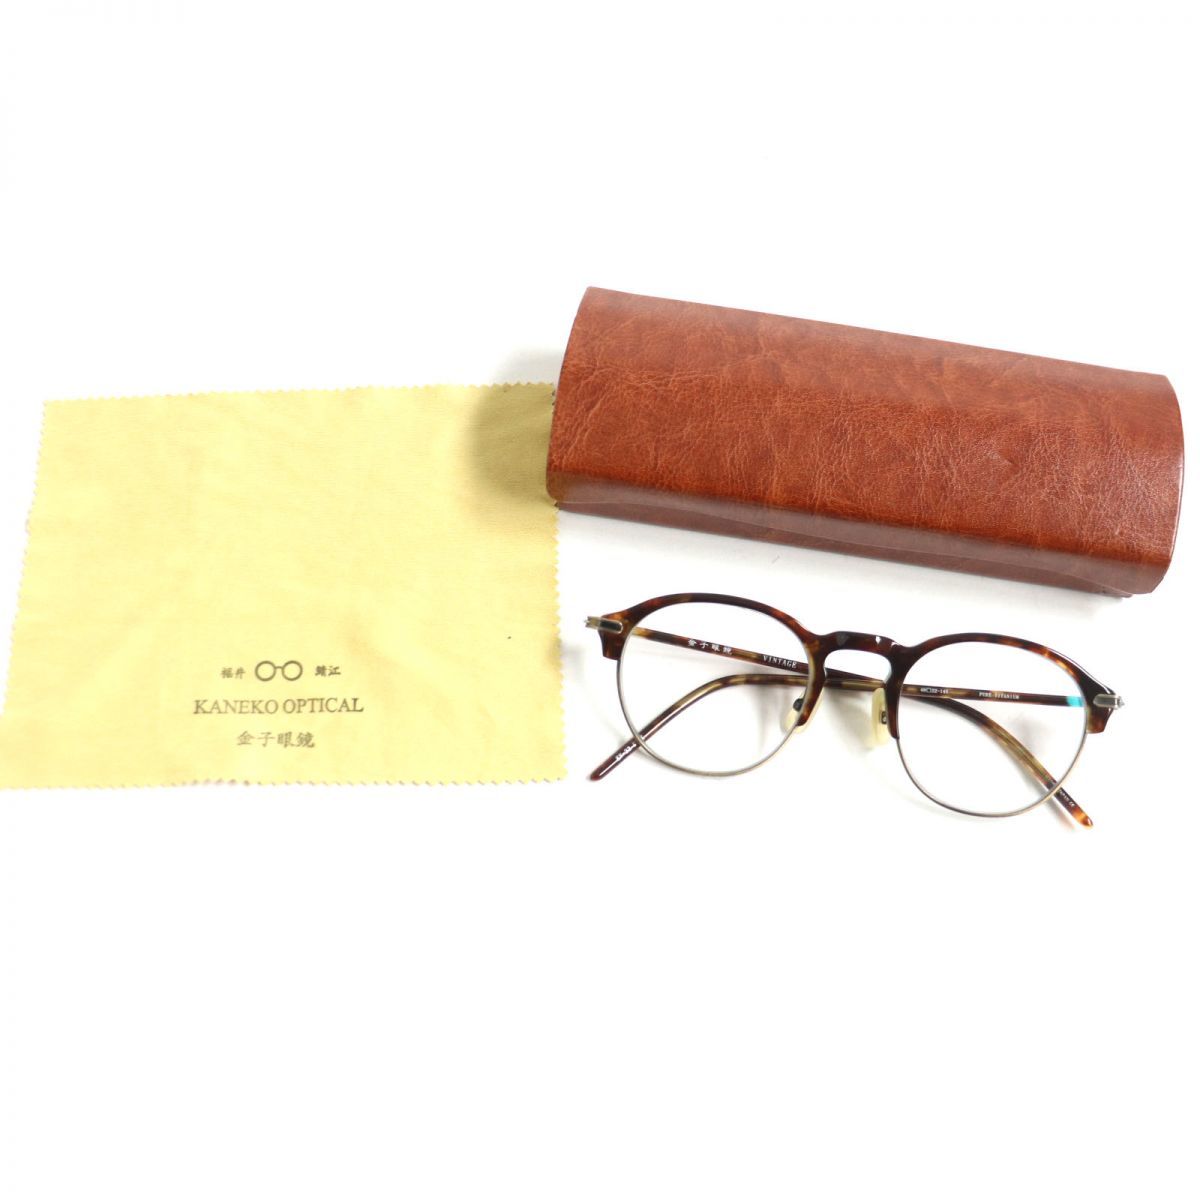 5☆大好評 KANEKO-OPTICAL KO-005 金子眼鏡 度なし眼鏡